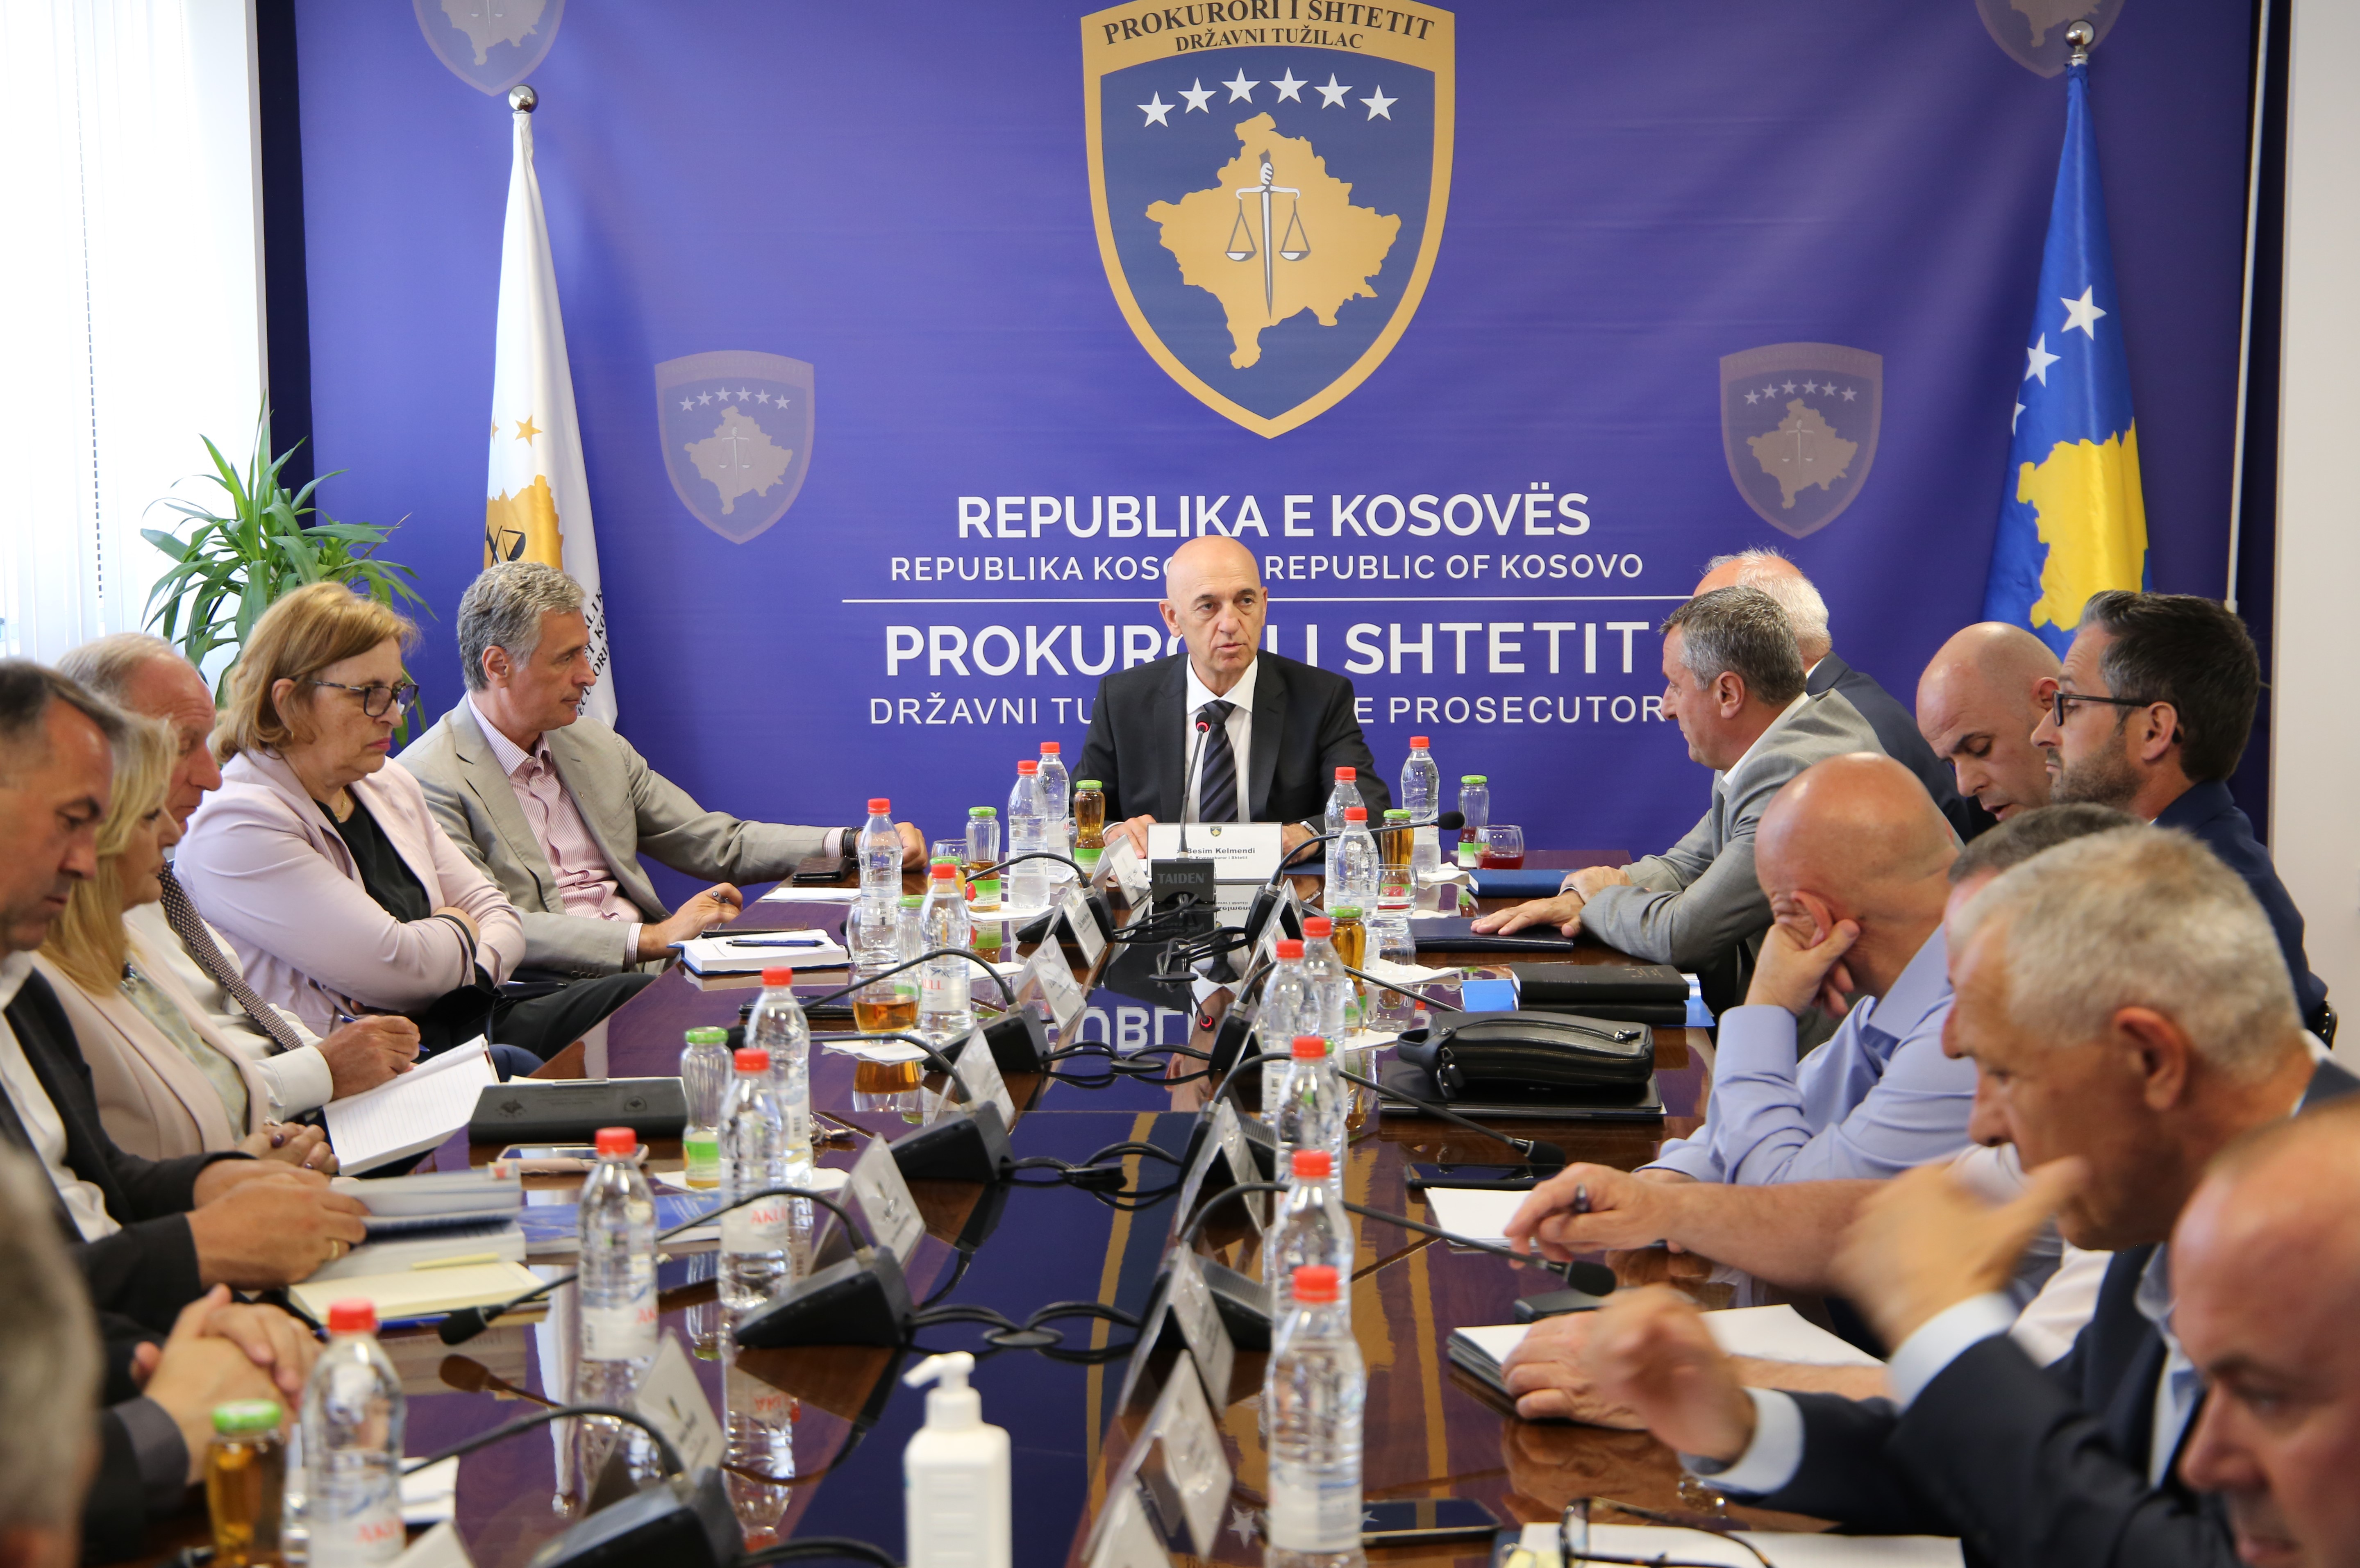 U.D. Kryeprokurori i Shtetit mbajti takimin e kolegjiumit me prokurorët e Zyrës së Kryeprokurorit të Shtetit dhe kryeprokurorët e prokurorive të Republikës së Kosovës